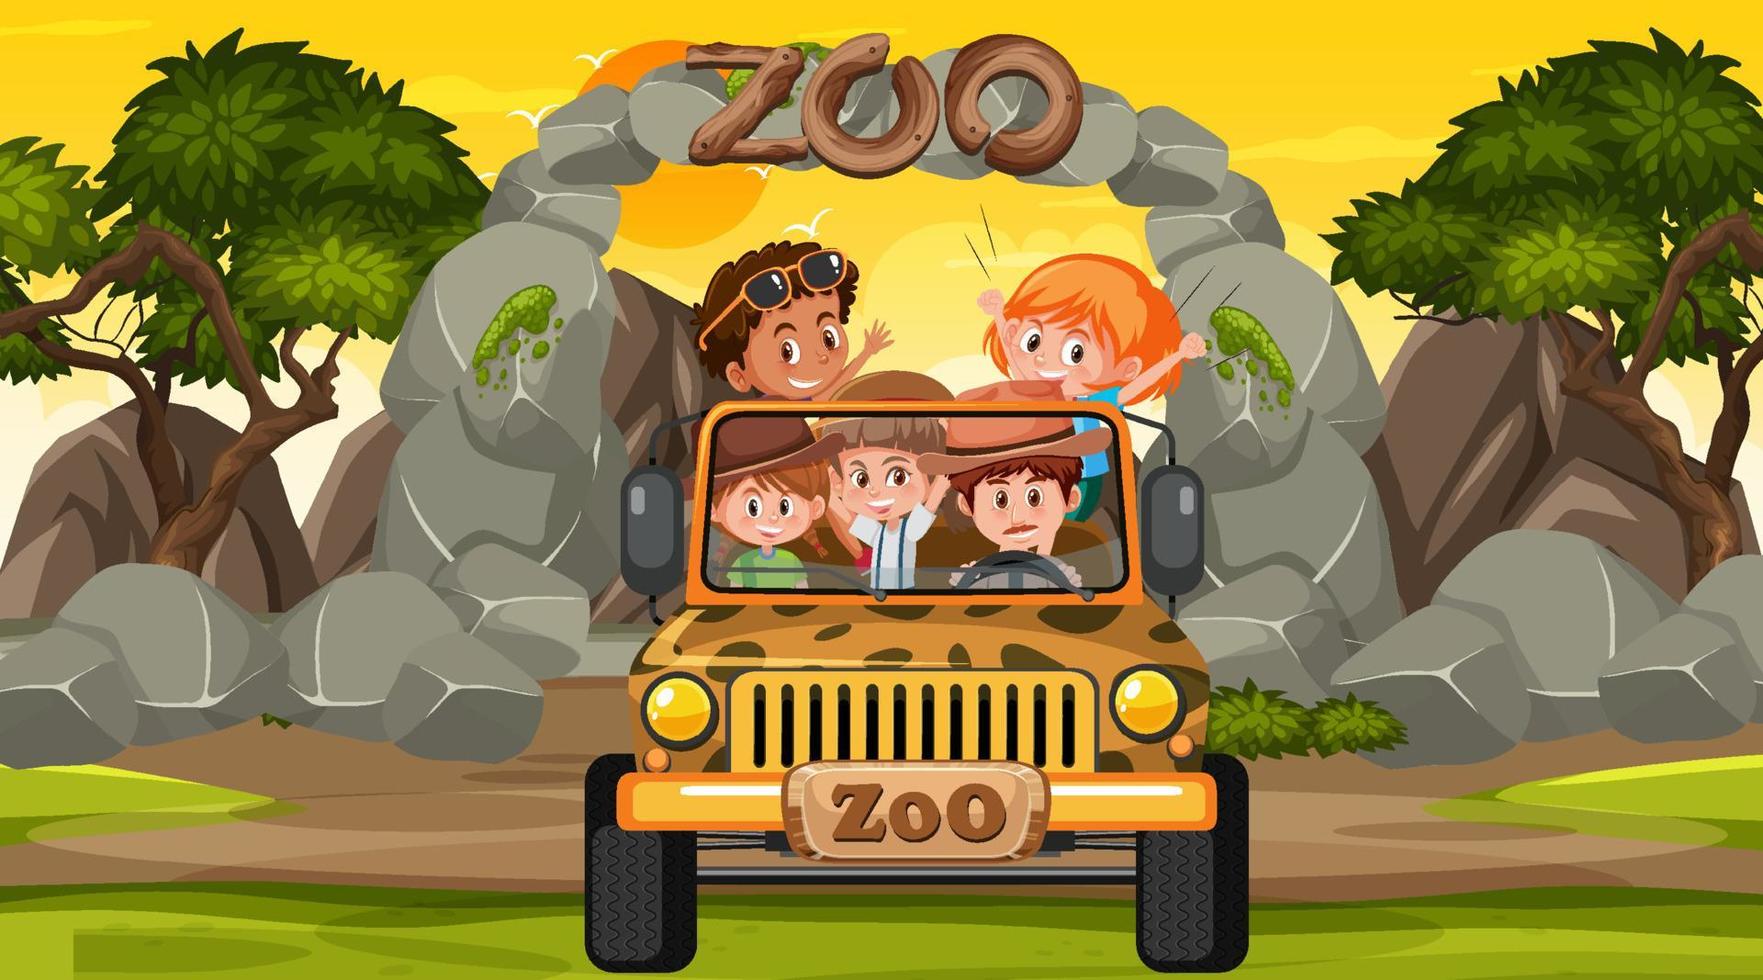 dierentuin bij zonsondergang met veel kinderen in een jeepauto vector